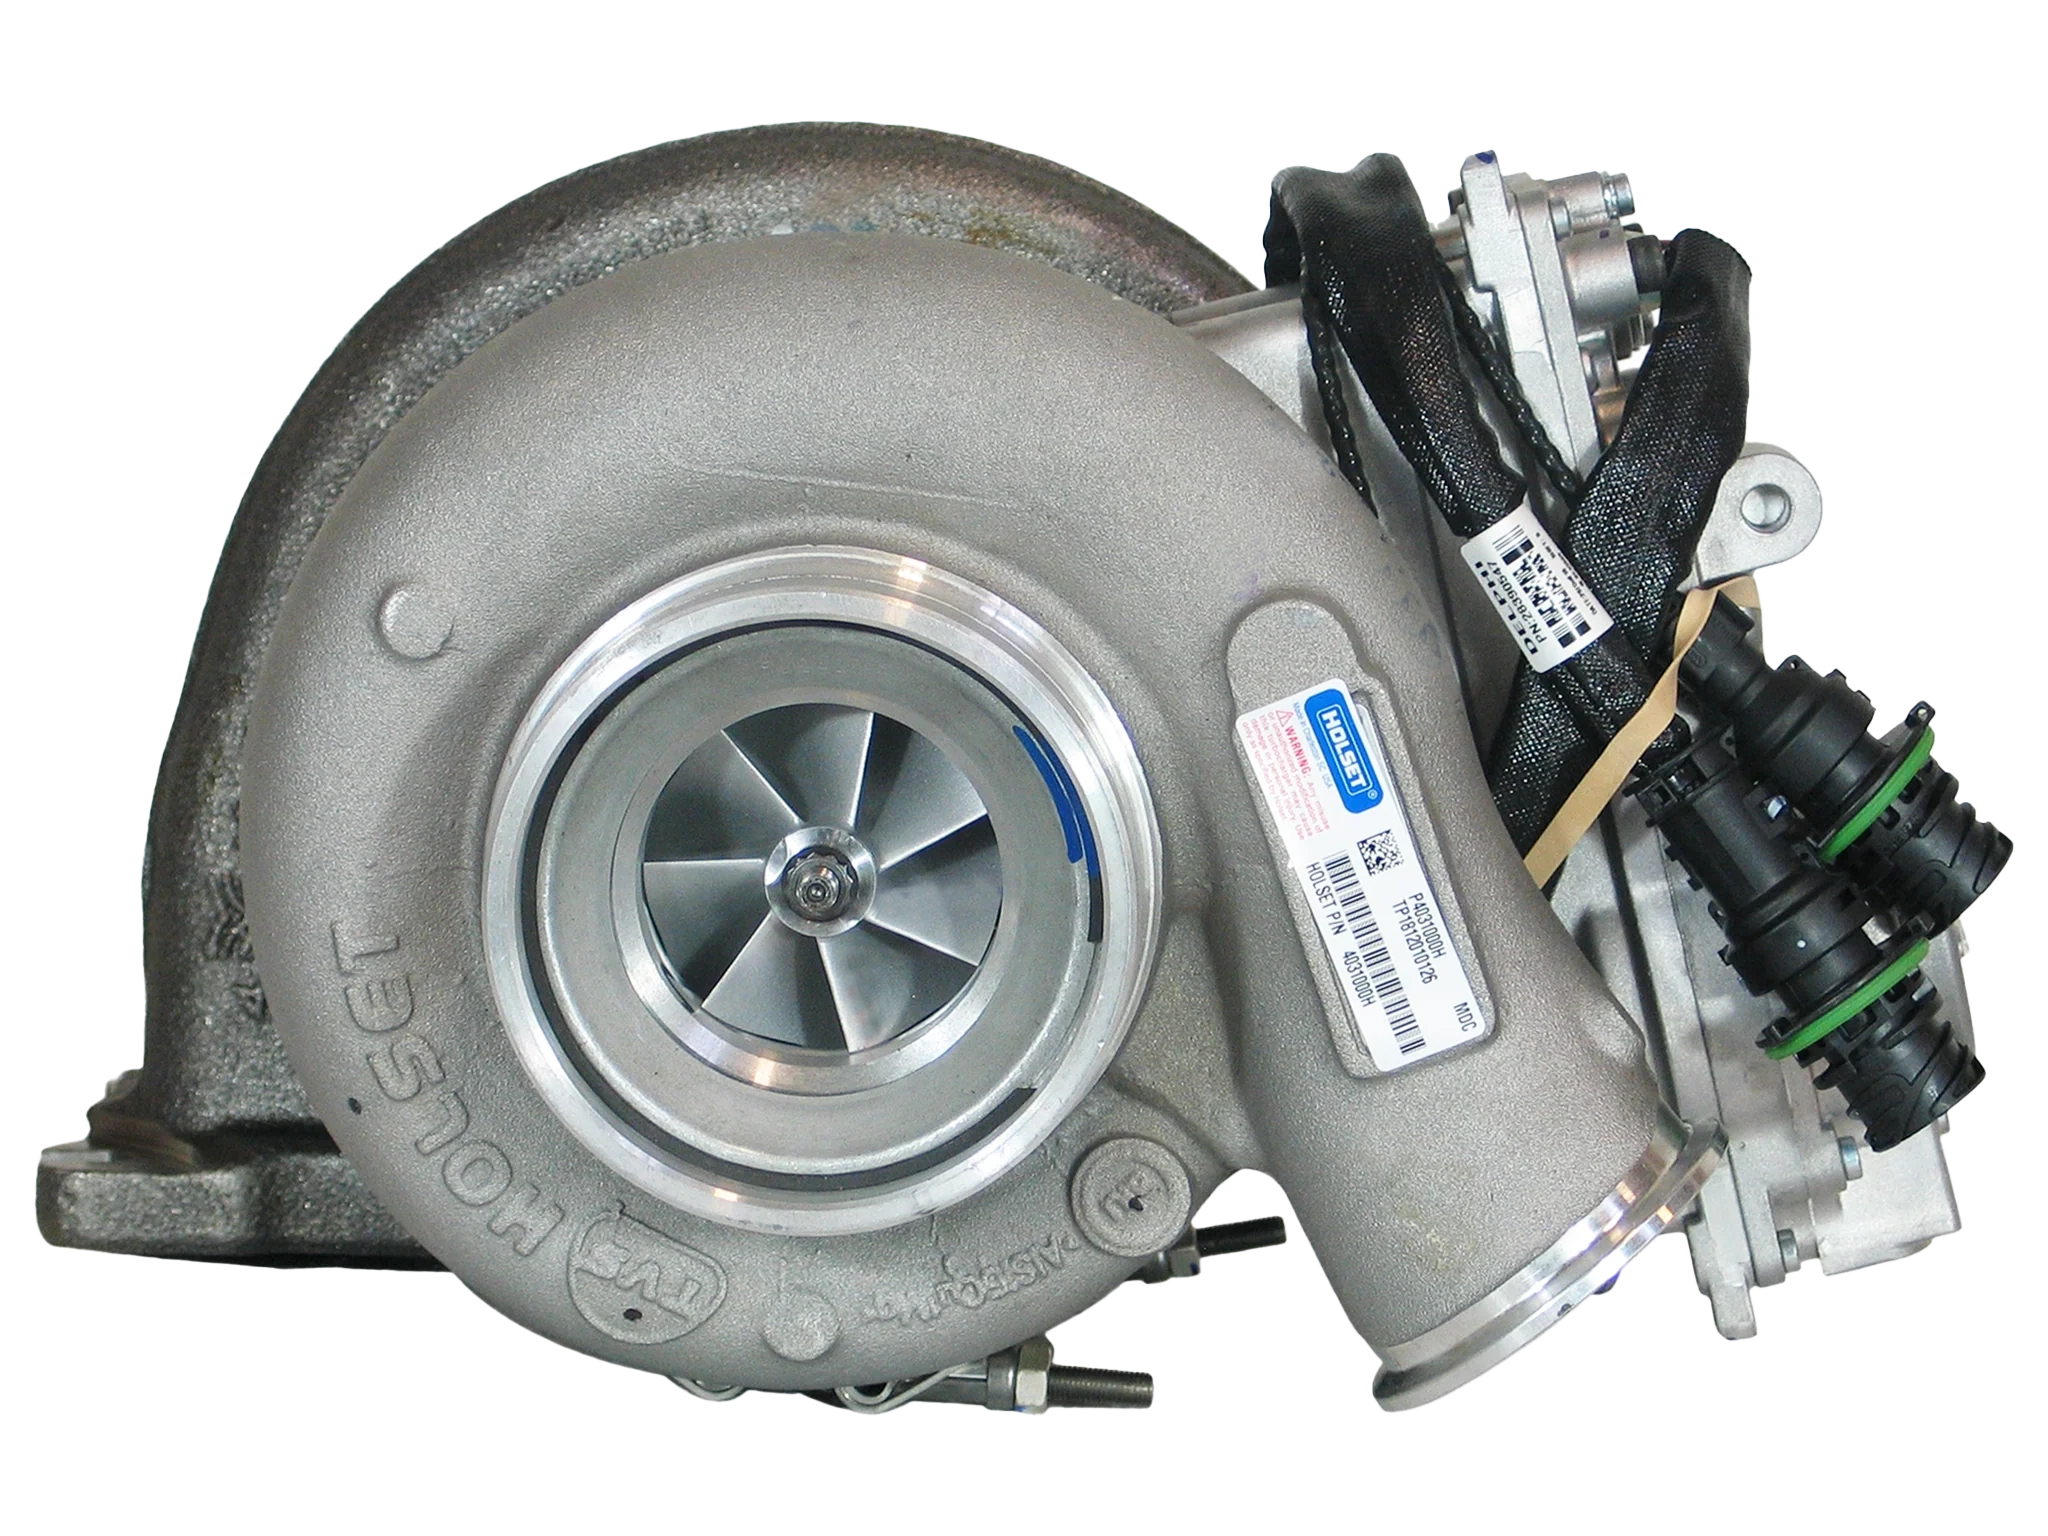 Holset HE400VG Turbocharger for Mack Volvo Truck MD13 Diesel 13.0L - Mic Turbo